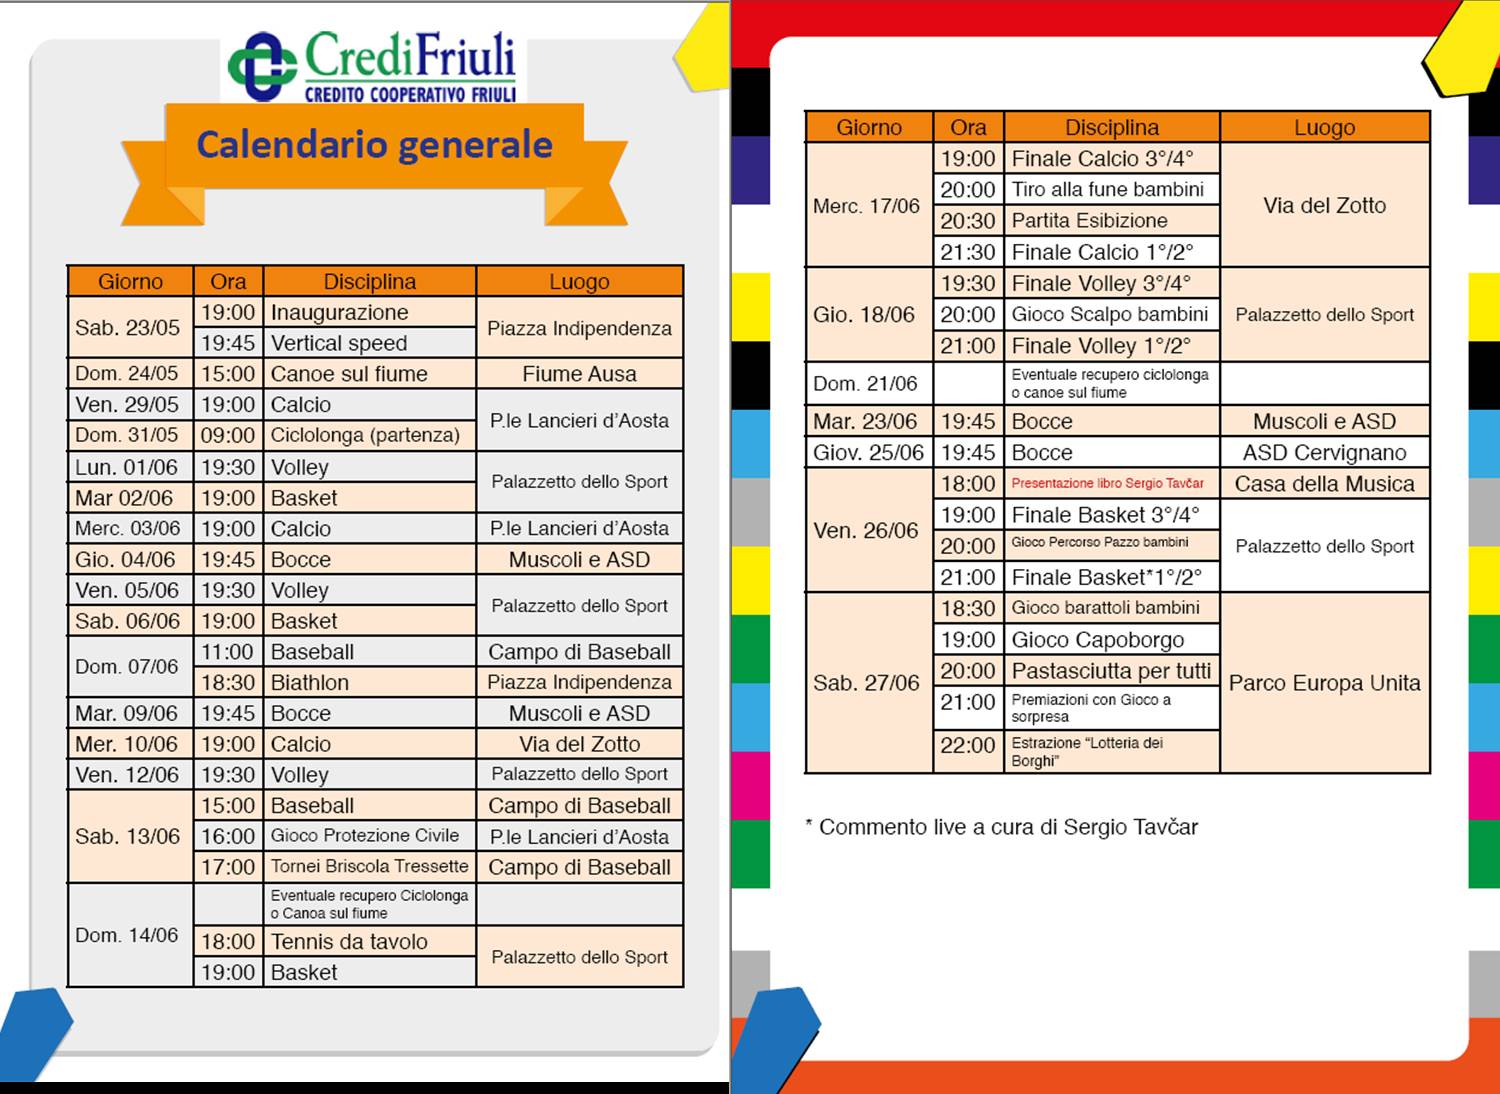 Calendario torneo borghi 2015